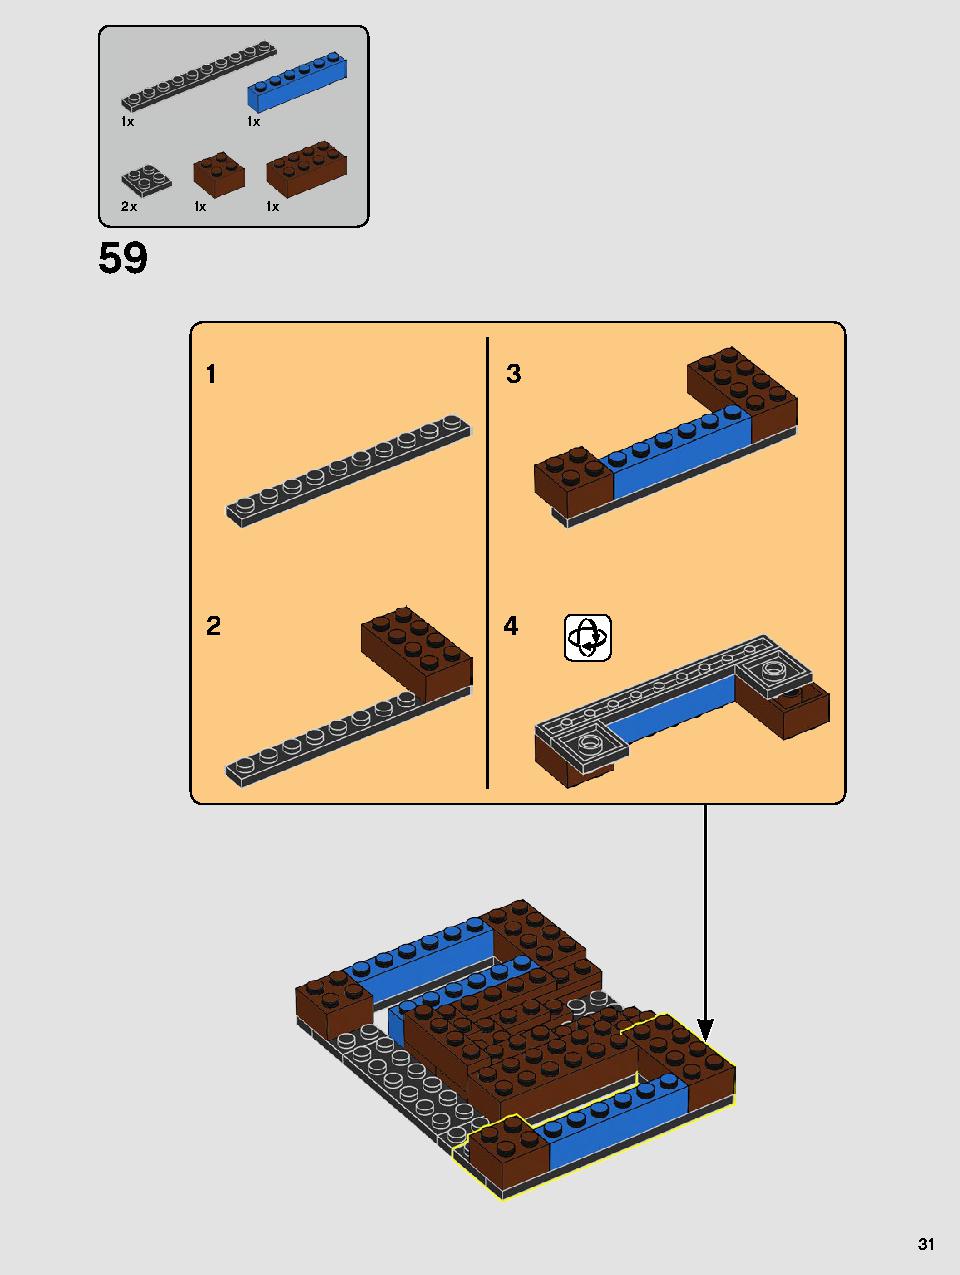 ヨーダ™ 75255 レゴの商品情報 レゴの説明書・組立方法 31 page